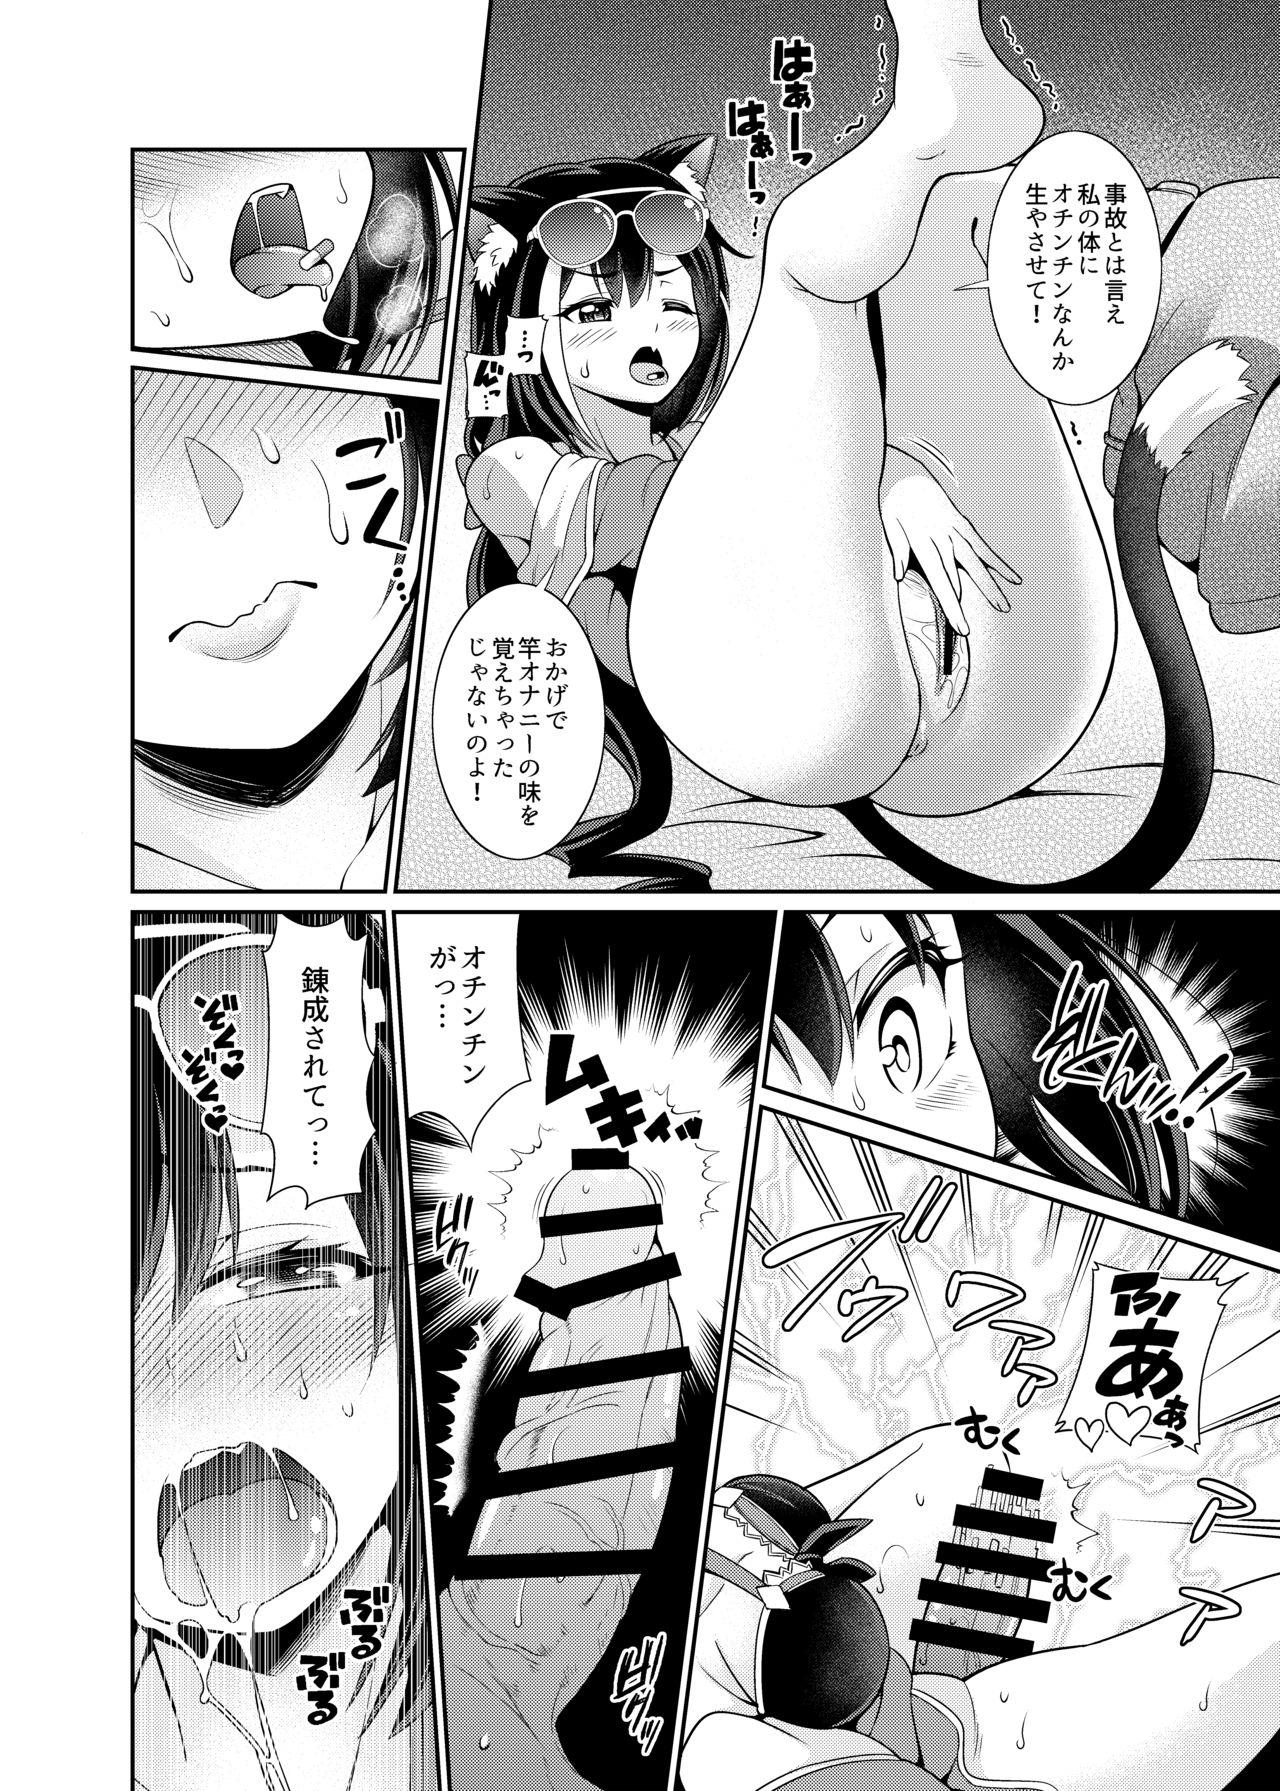 Suckingdick Umi ni nante Kuru kara…Ochinchin ga Haechau no yo!! - Princess connect Asslicking - Page 4